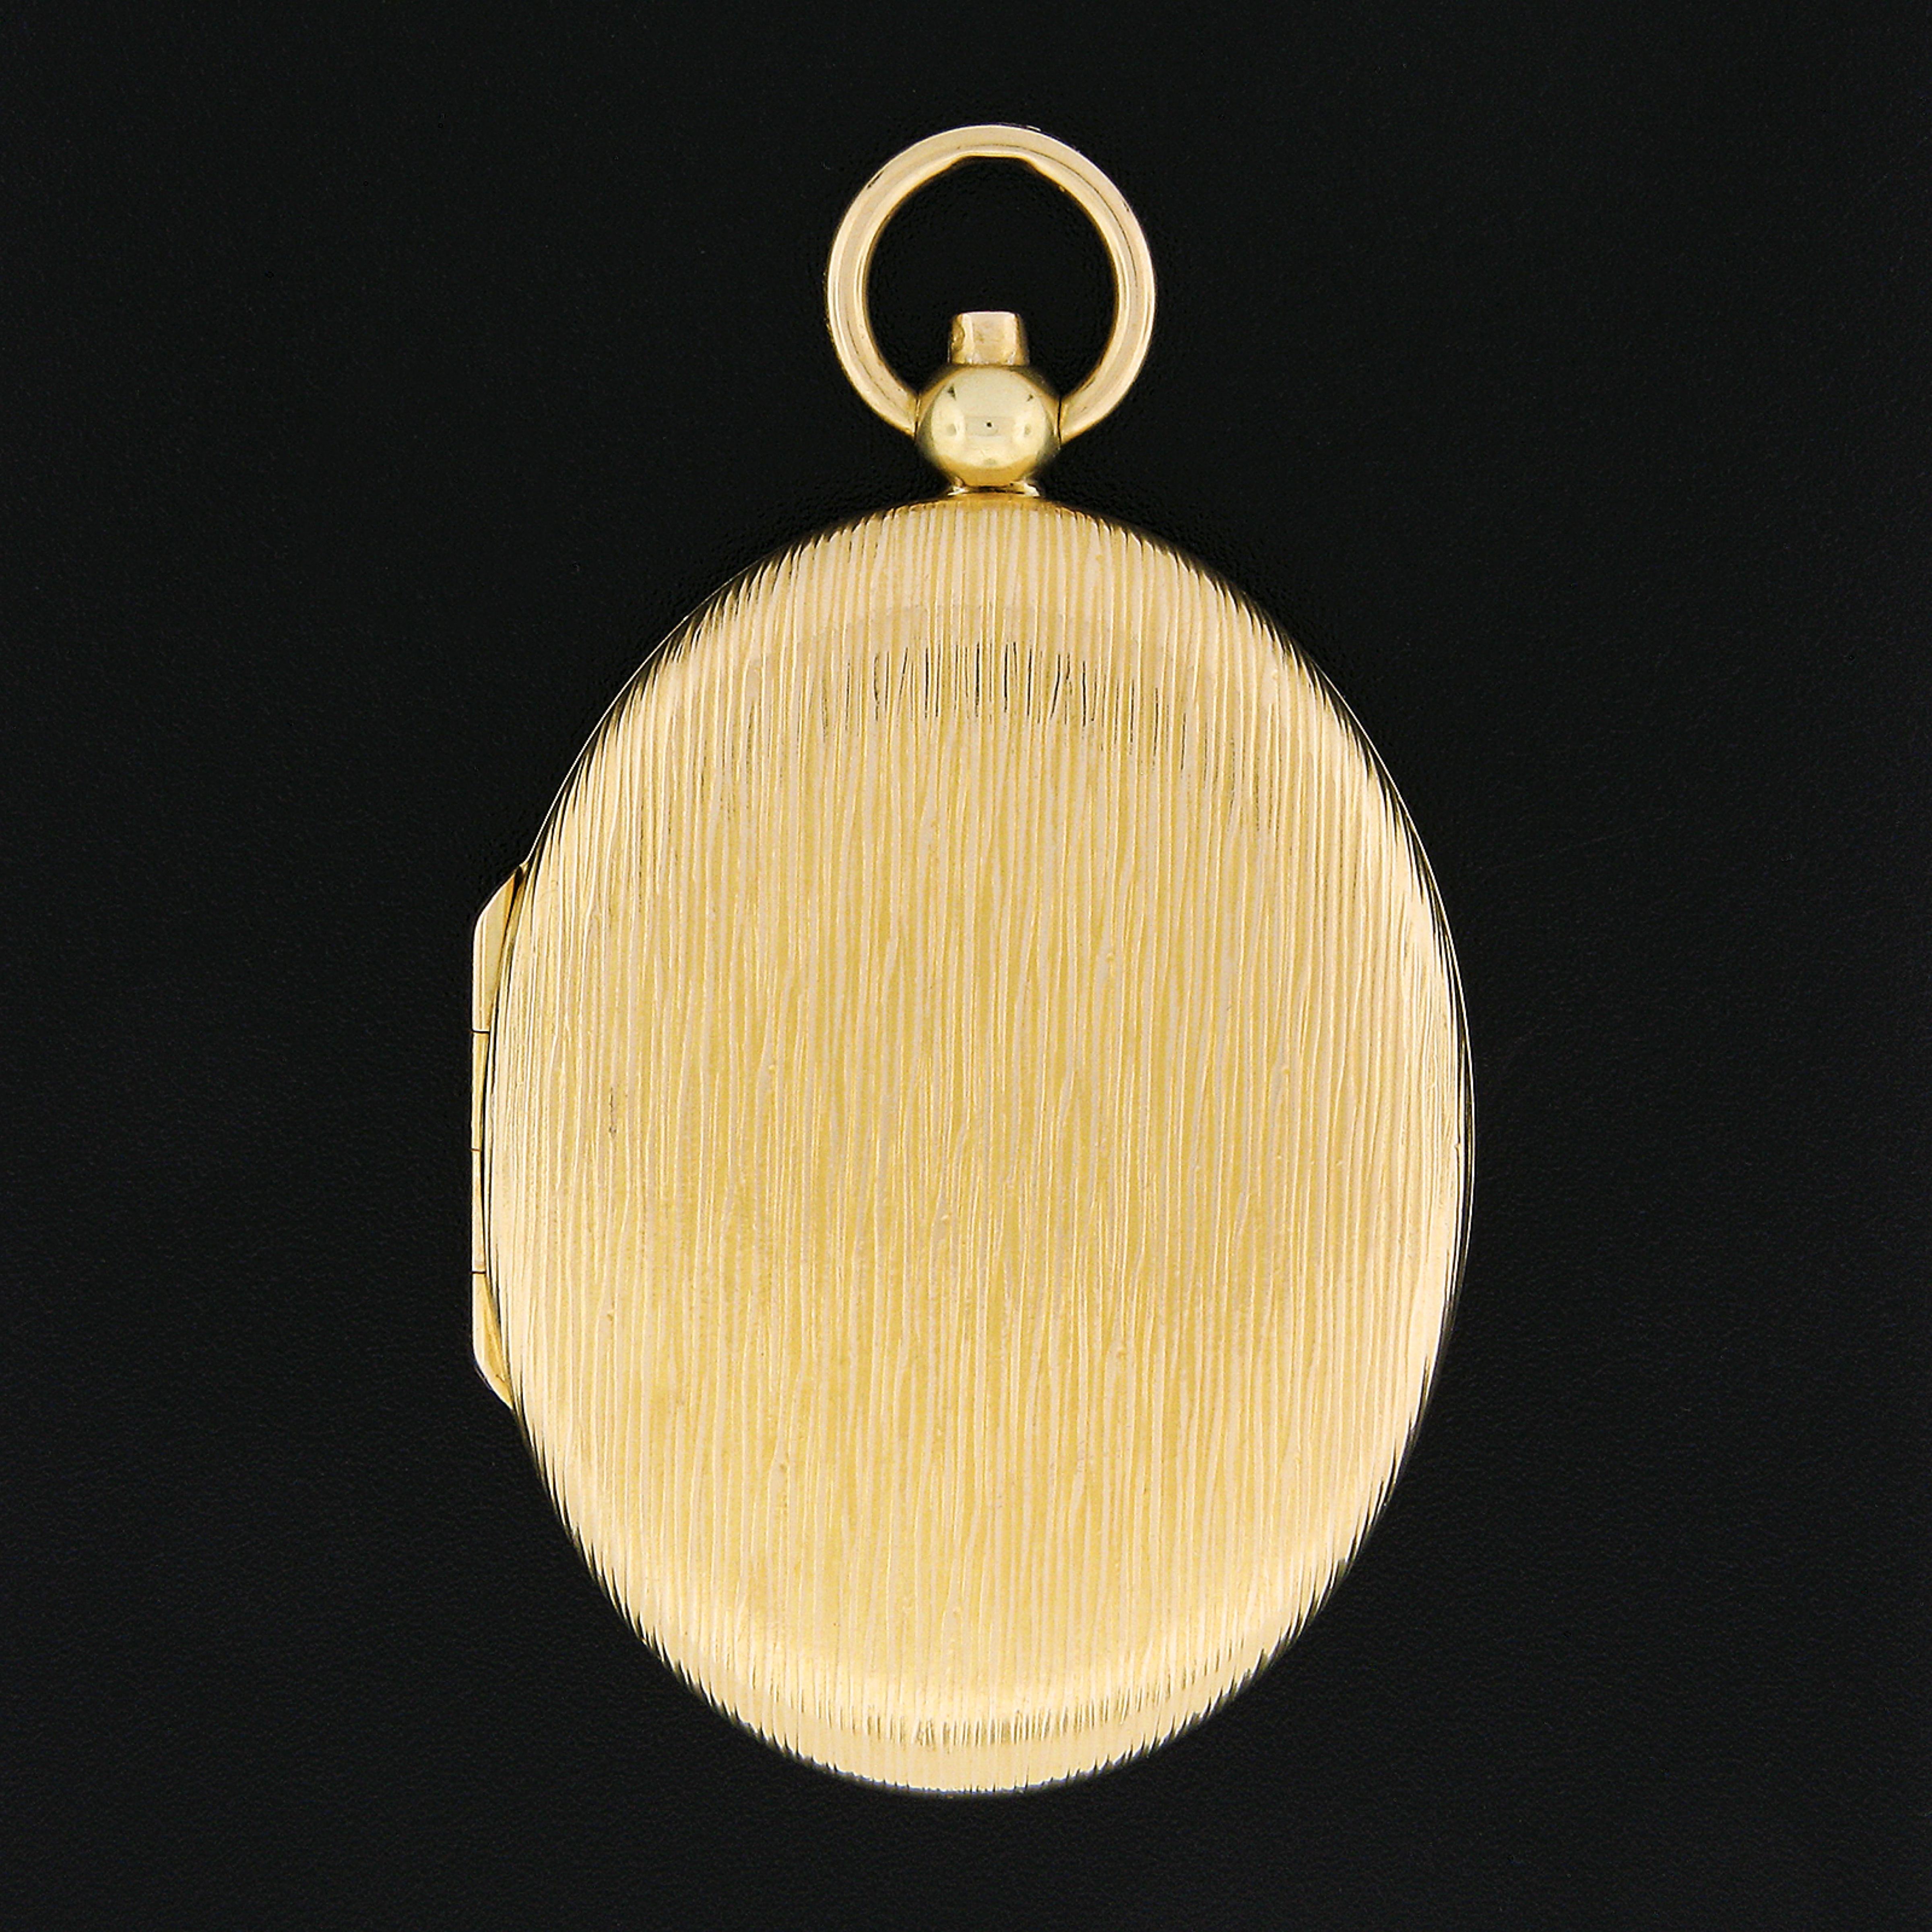 Ce magnifique pendentif vintage très bien fait a été fabriqué en or jaune 14 carats et présente une forme ovale extra-large entièrement recouverte d'une magnifique texture brossée à l'avant et à l'arrière. La texture étonnante a une finition